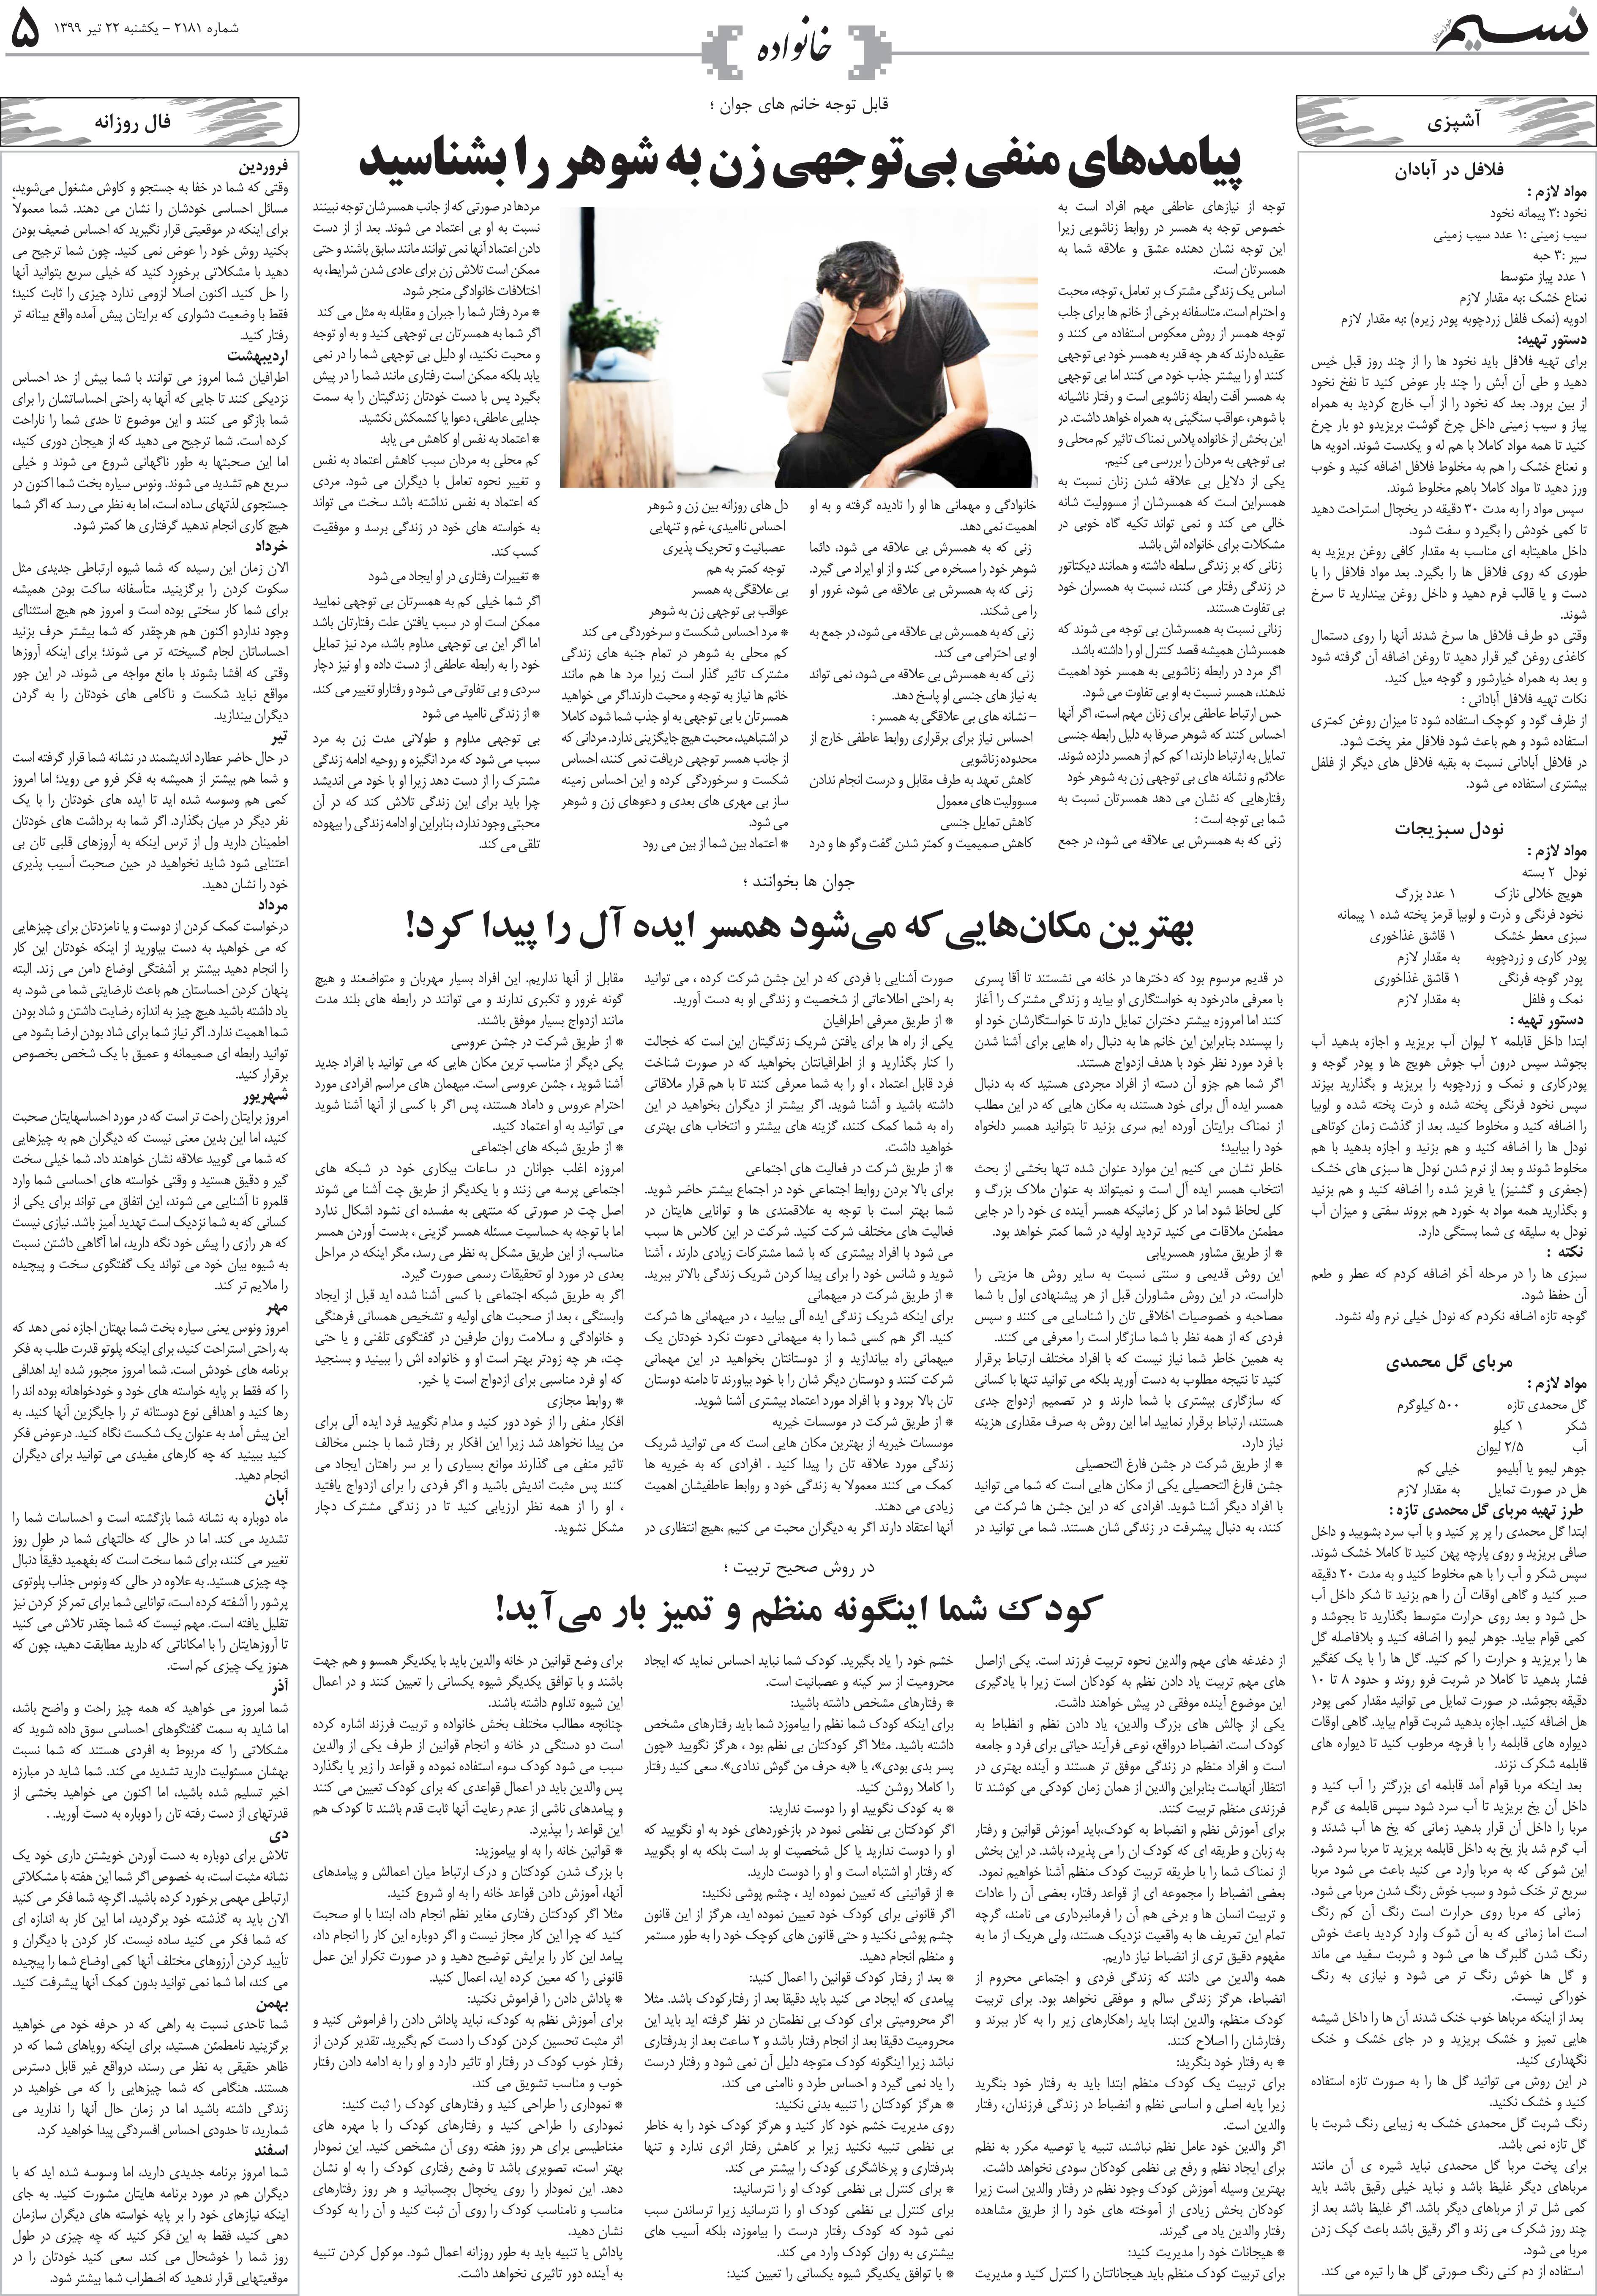 صفحه خانواده روزنامه نسیم شماره 2181